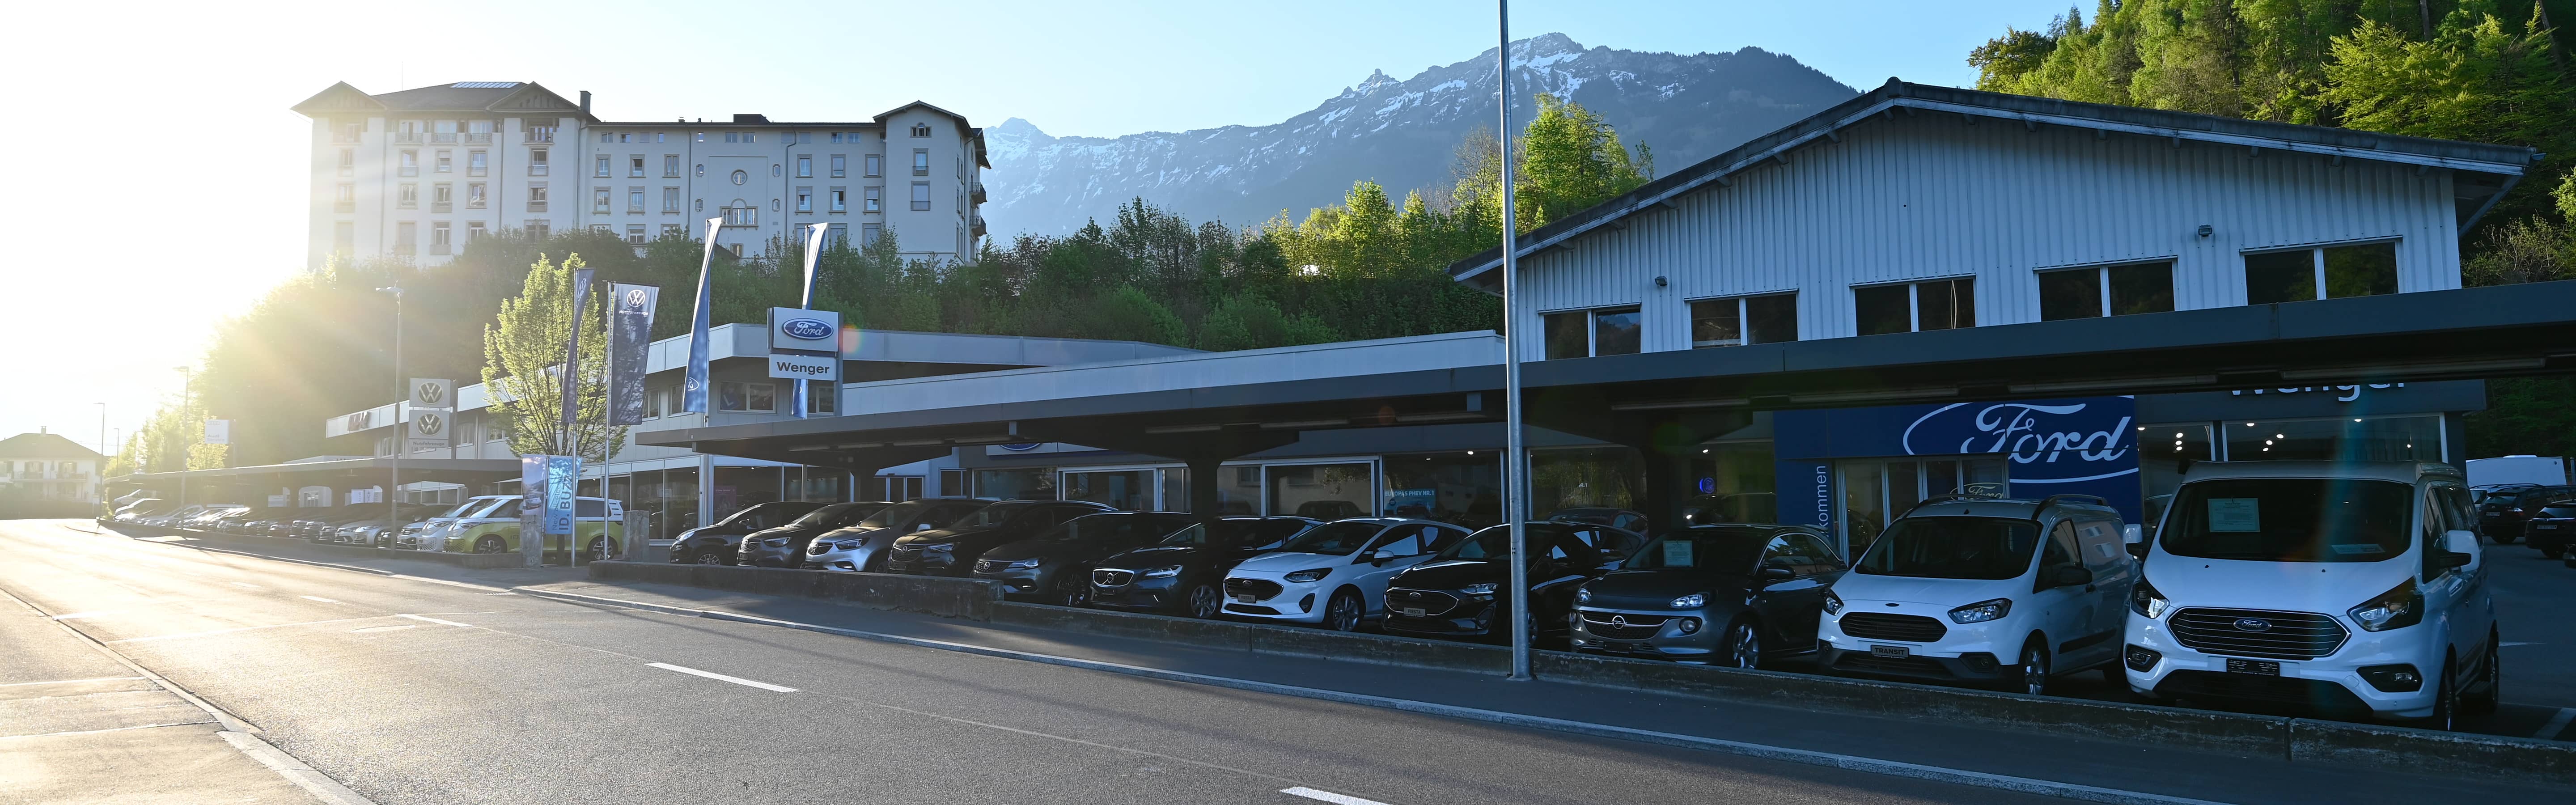 VW, Audi, Ford - Ihr neues Auto steht bei uns - Garage Wenger Interlaken